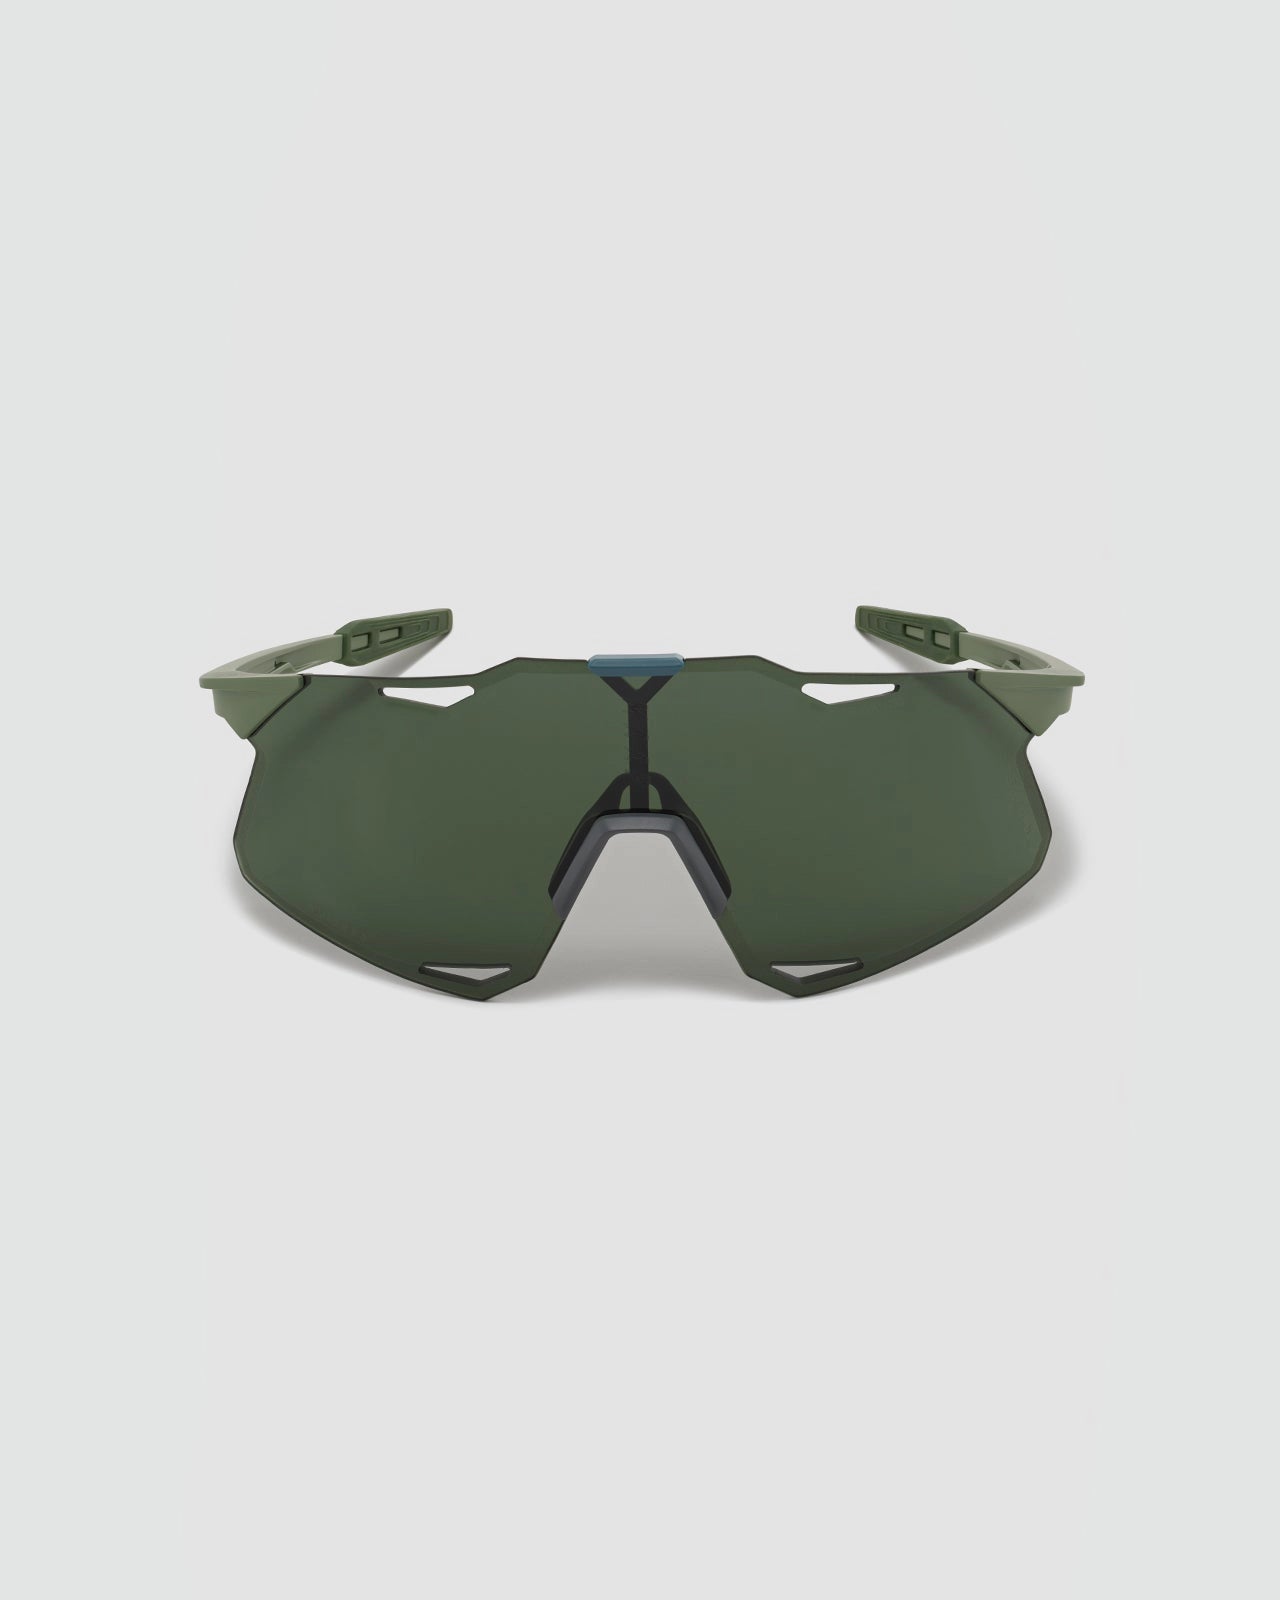 MAAP x 100% Hypercraft Sunglasses - Forest Green